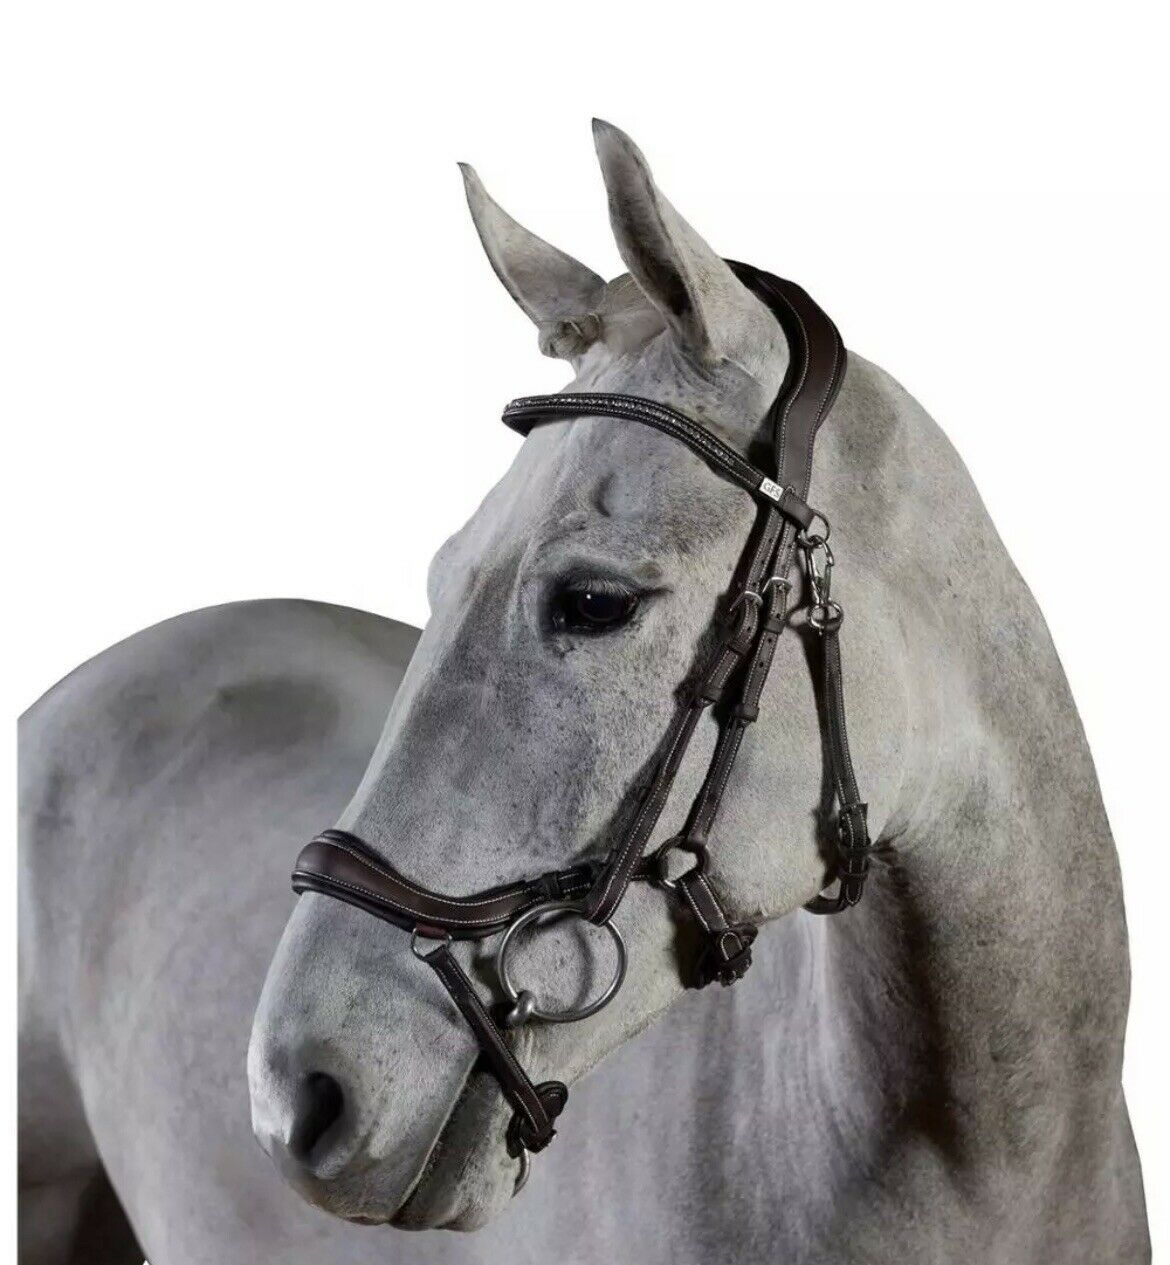 Testiera anatomica per cavallo monta inglese in pelle superiore Testa Di Moro, redini incluse